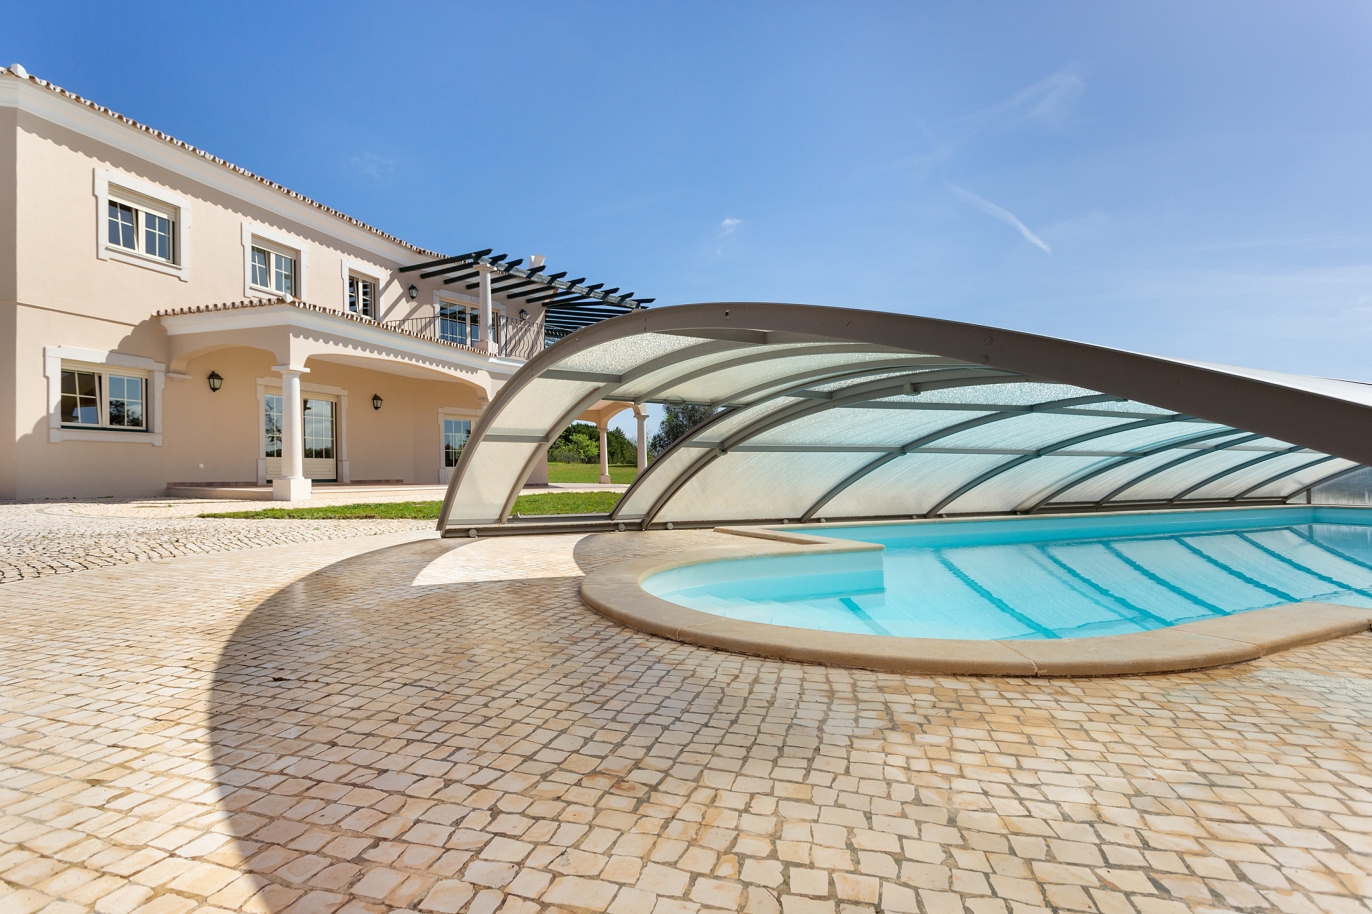 Moradia V4 com piscina, para venda, em São Brás de Alportel, Algarve_219382